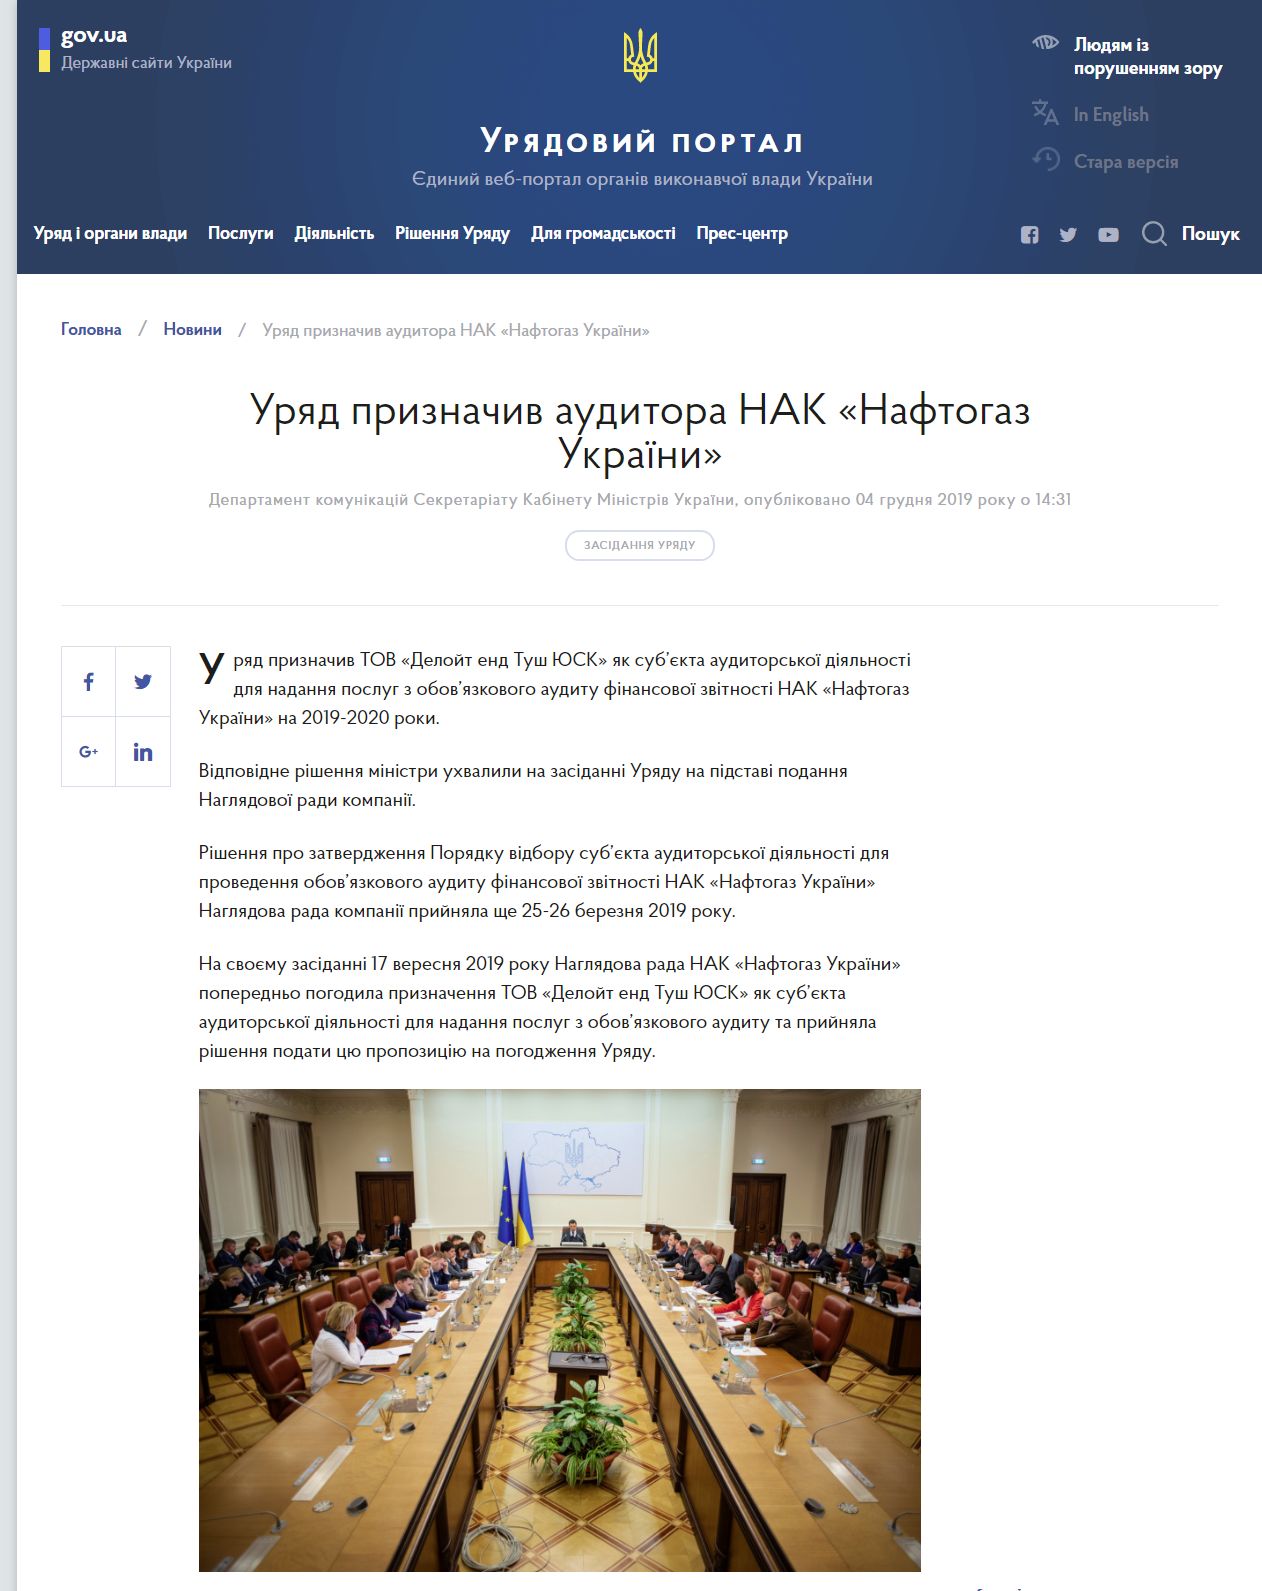 https://www.kmu.gov.ua/news/uryad-priznachiv-auditora-nak-naftogaz-ukrayini